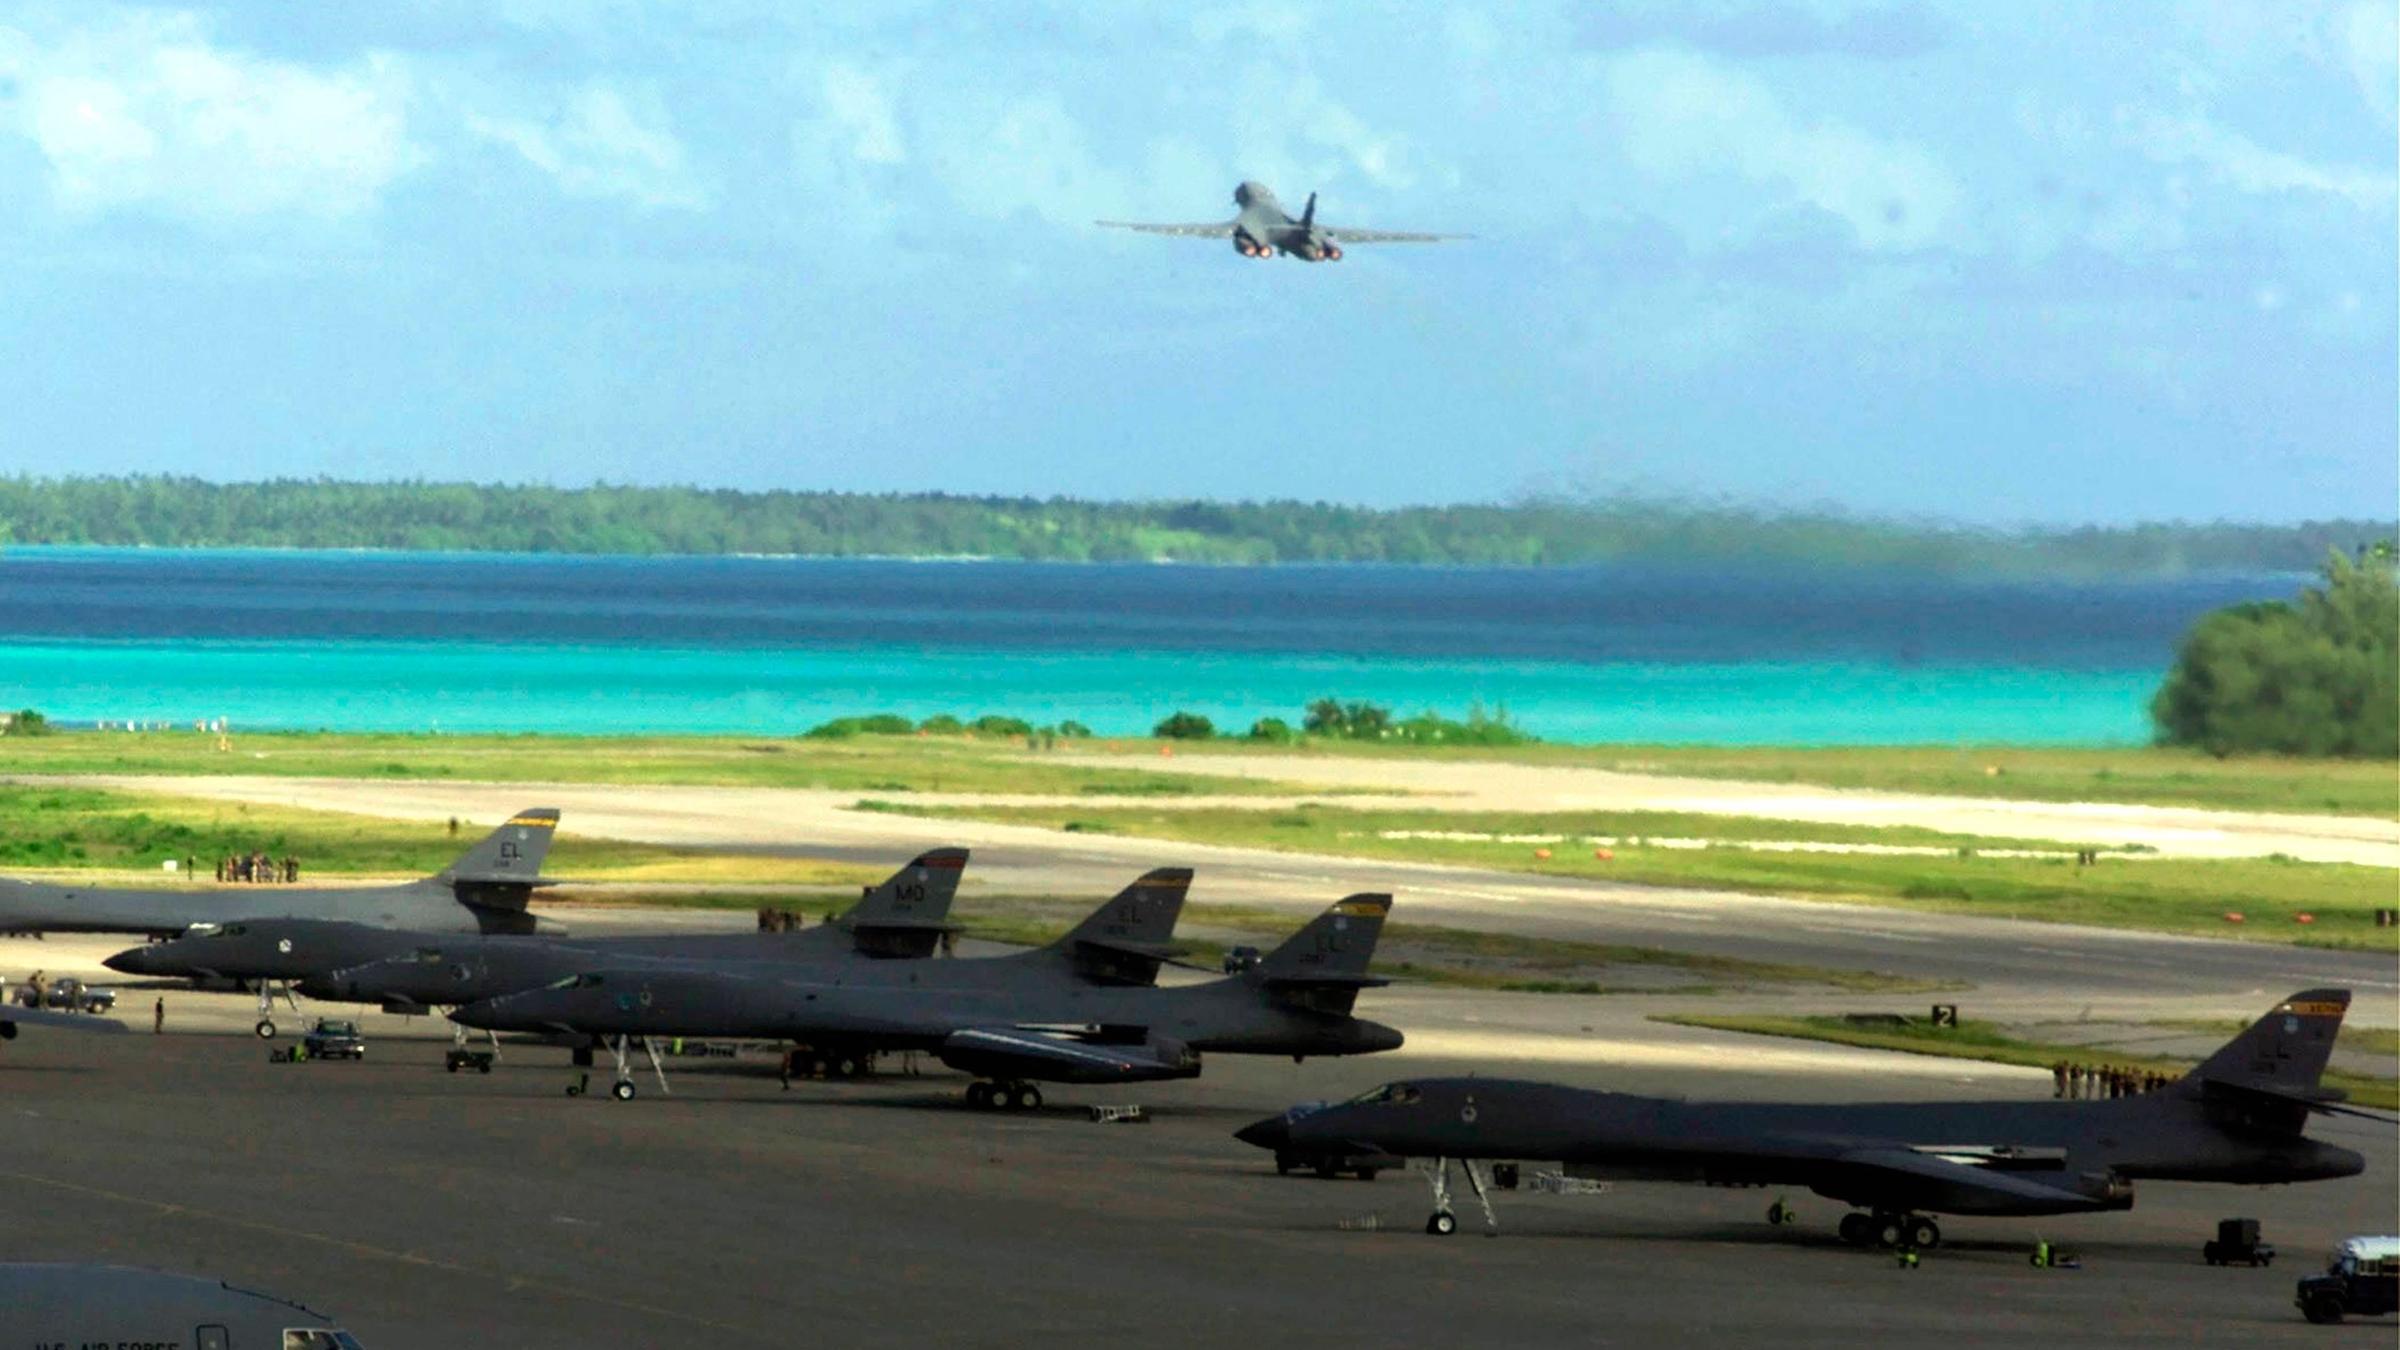 US-amerikanische Militärflugzeuge starten von einer Militärbasis aus. Im Hintergrund ist das türkisblaue Wasser der Lagune zu sehen.